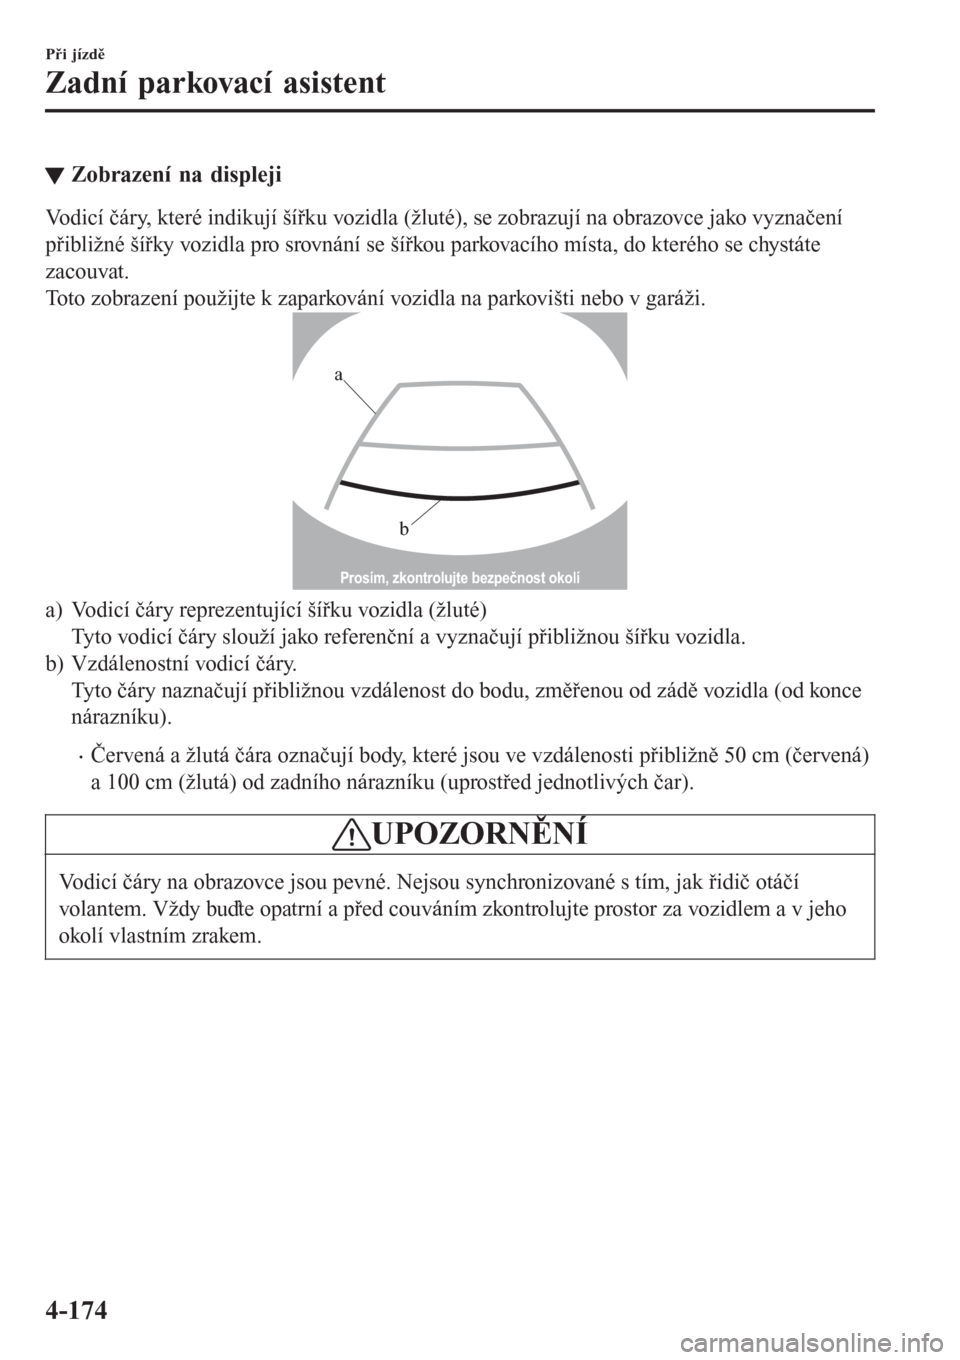 MAZDA MODEL CX-3 2016  Návod k obsluze (in Czech) tZobrazení na displeji
Vodicí čáry, které indikují šířku vozidla (žluté), se zobrazují na obrazovce jako vyznačení
přibližné šířky vozidla pro srovnání se šířkou parkovacího 